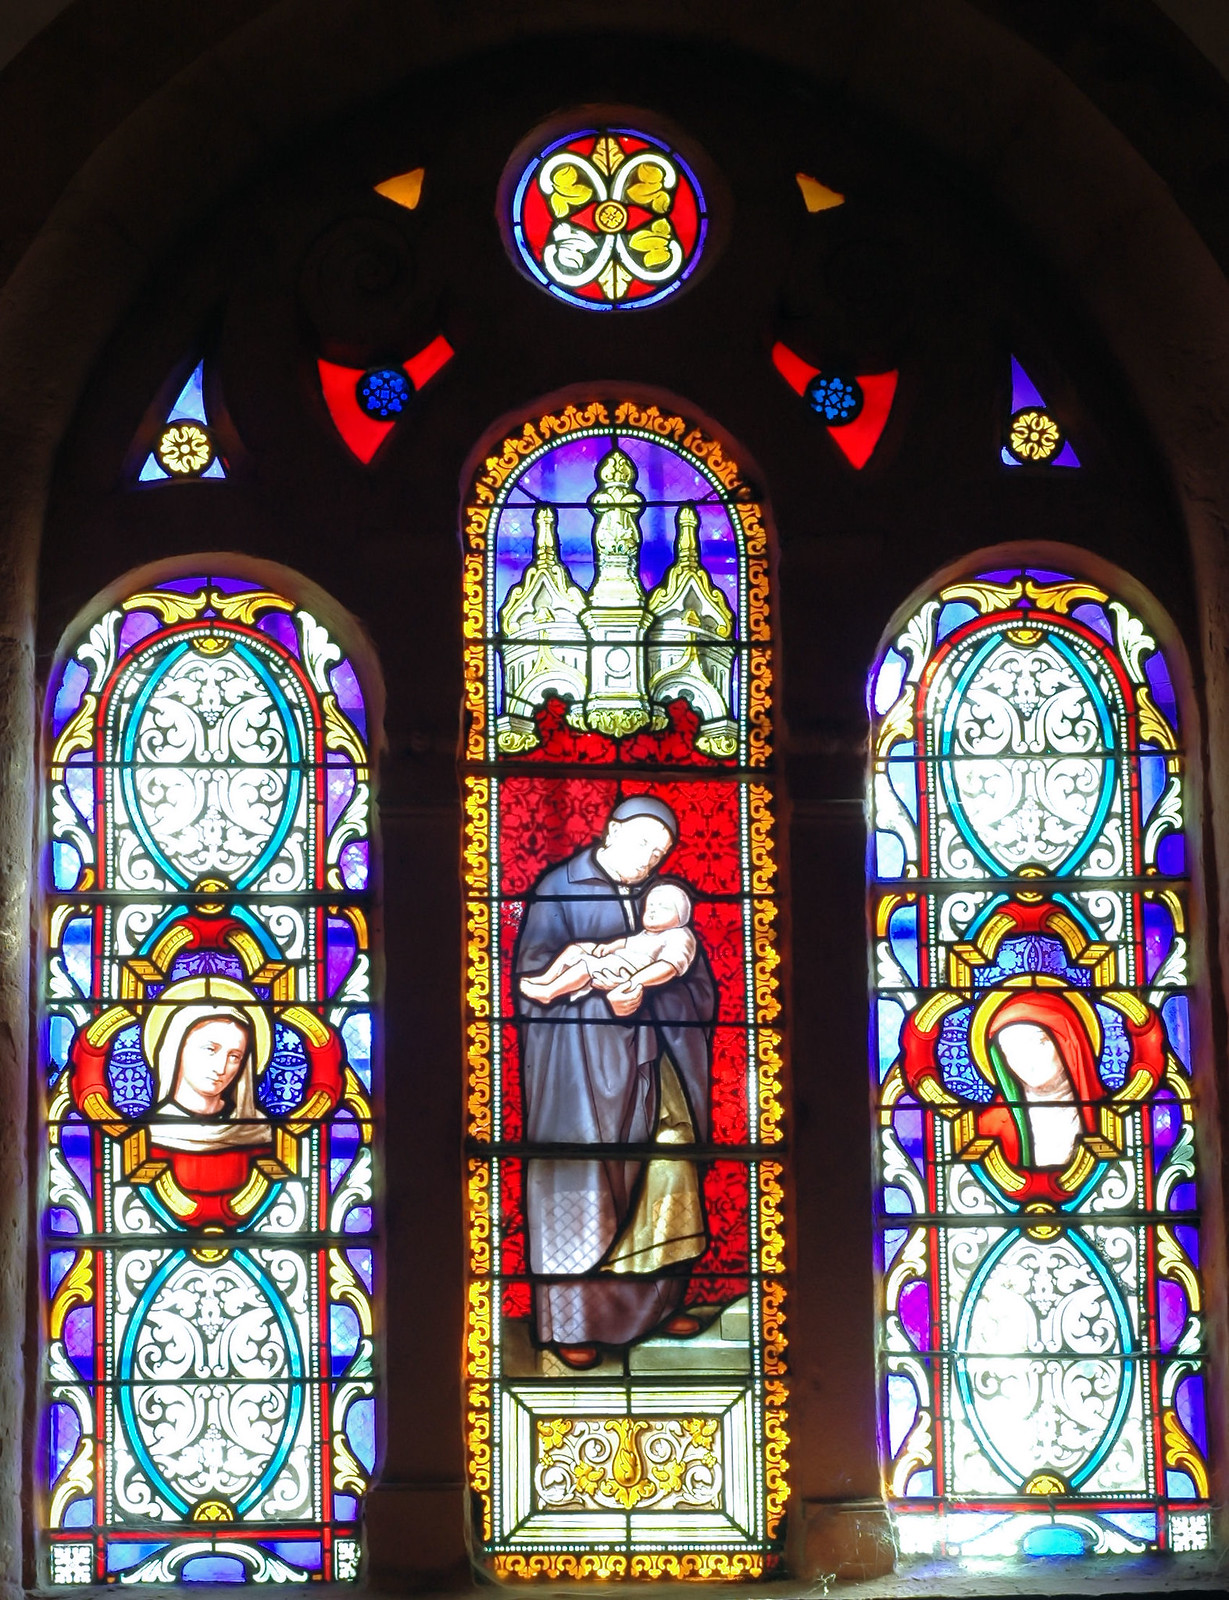 Vitrail de l'église d'Orgelet représentant Saint-Vincent-de-Paul